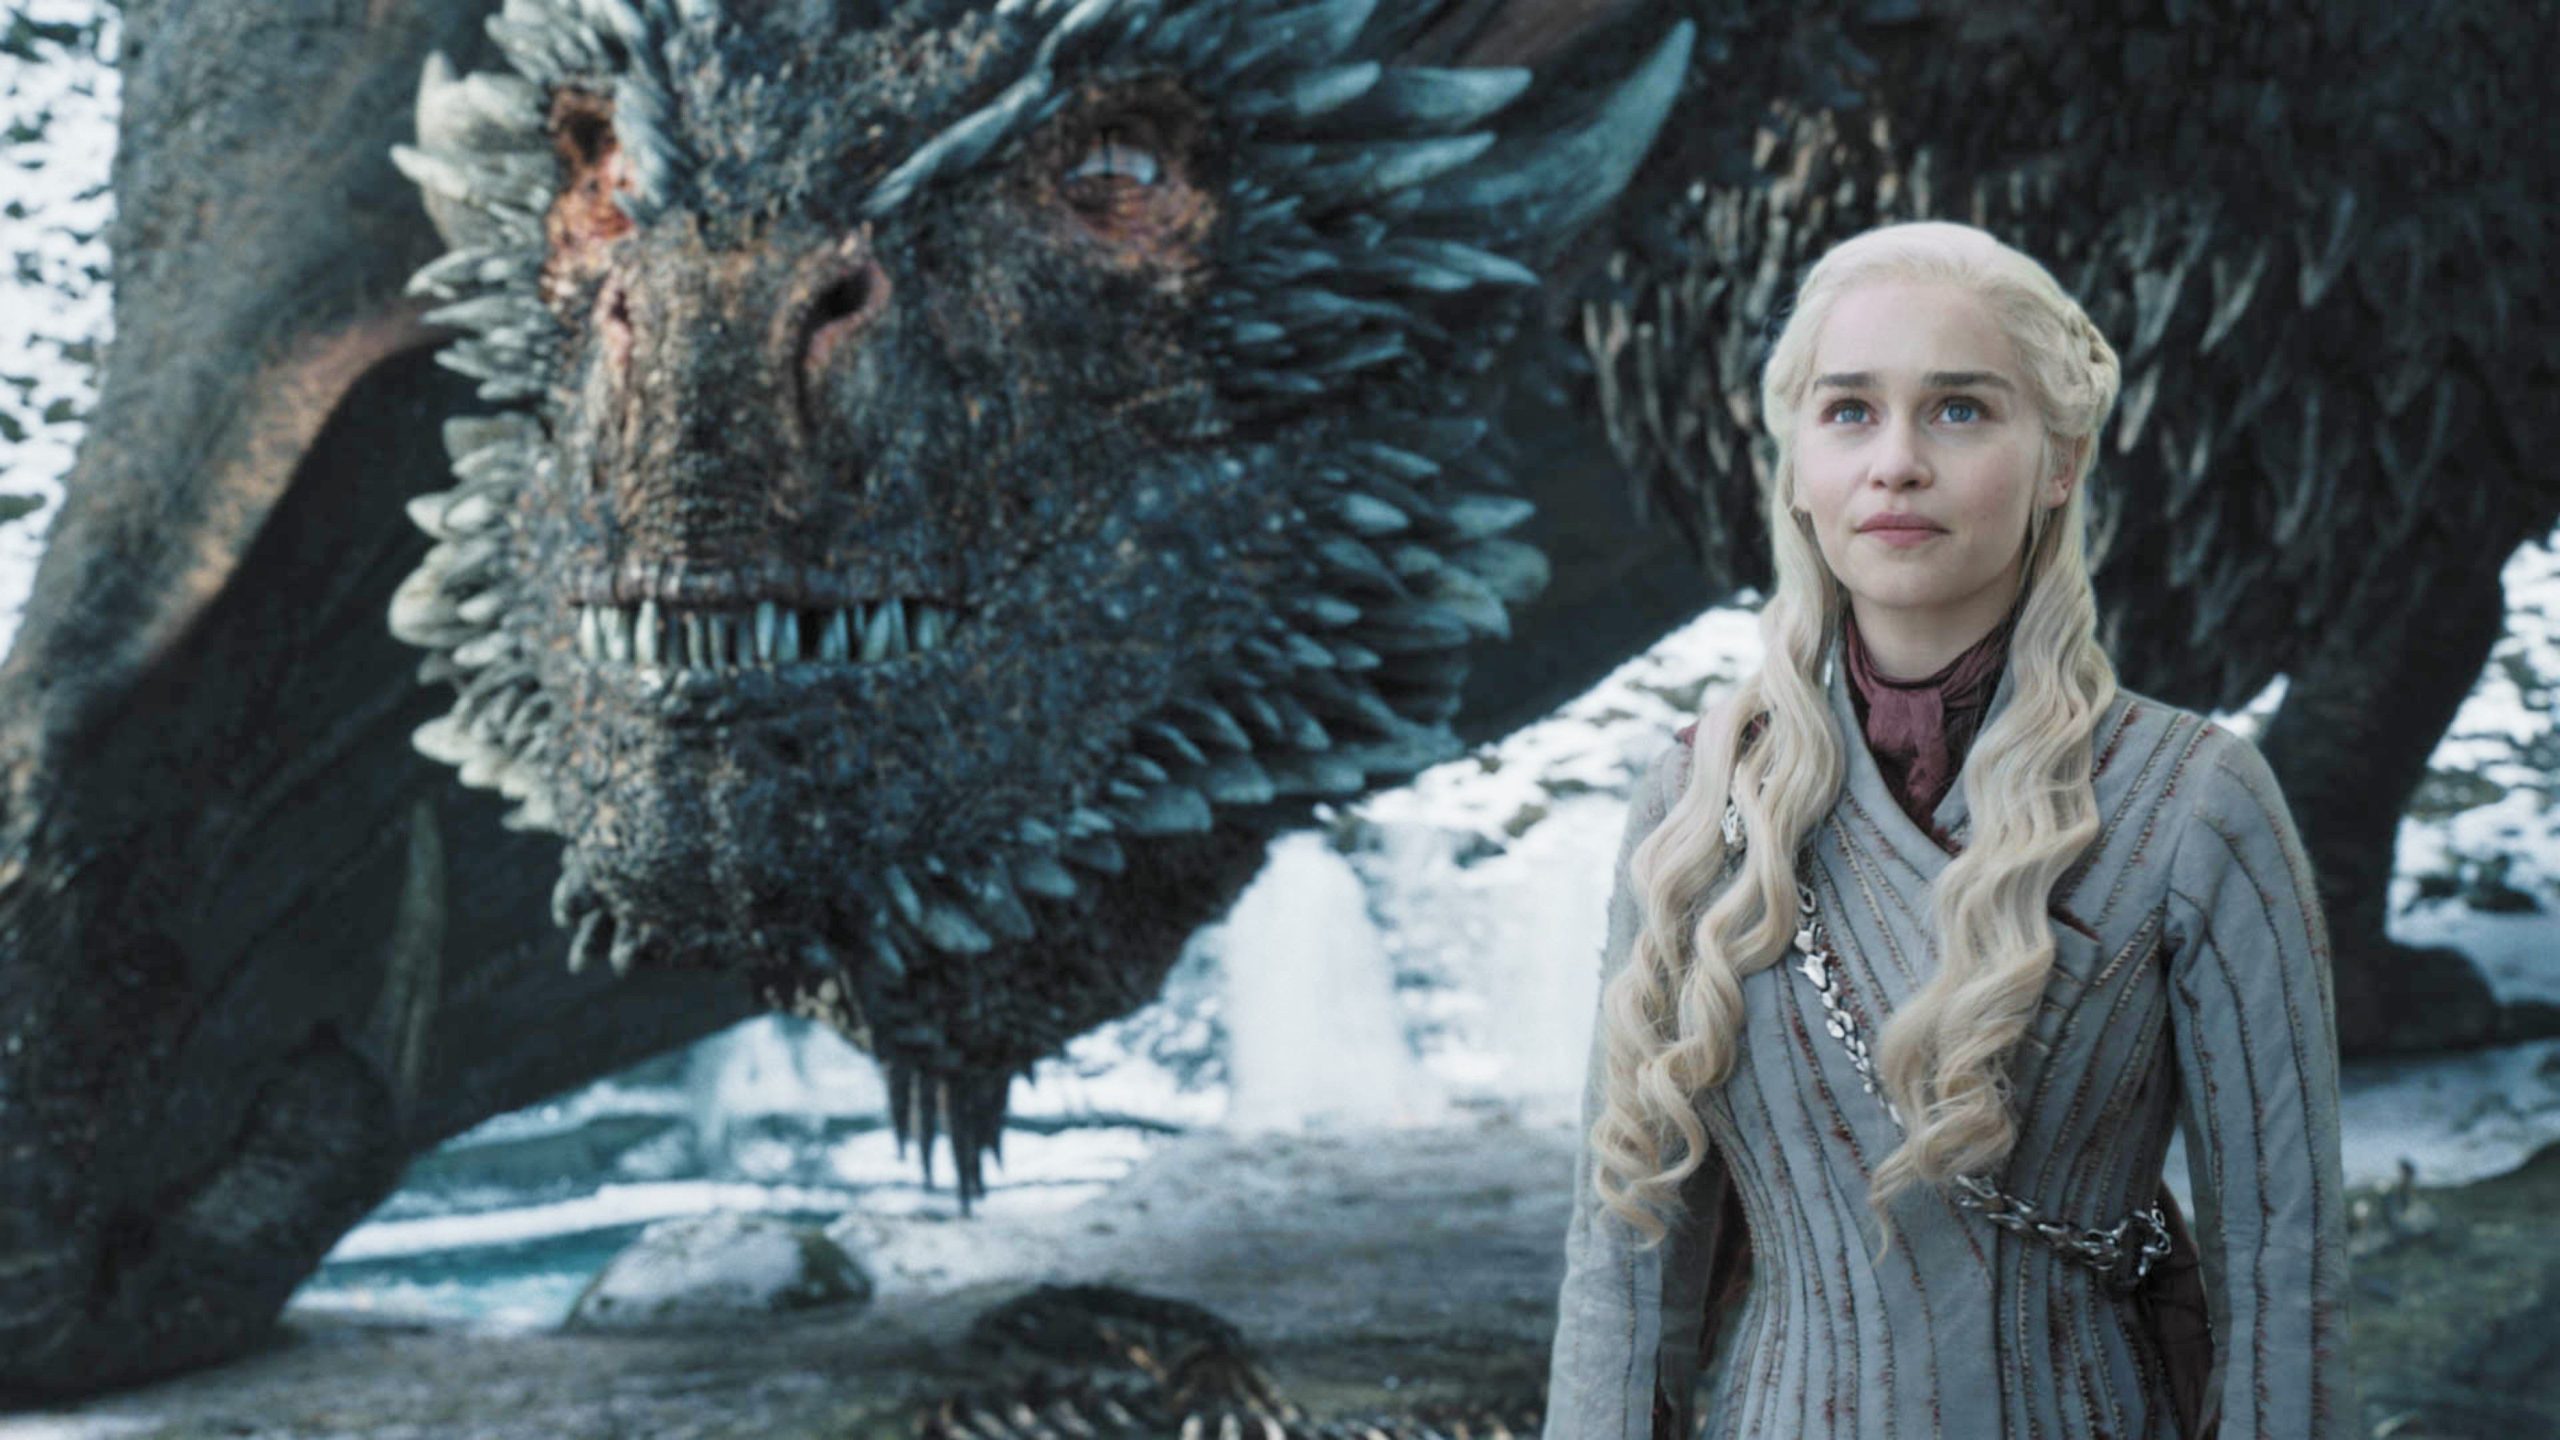 Daenerys e Drogon um de seus dragões